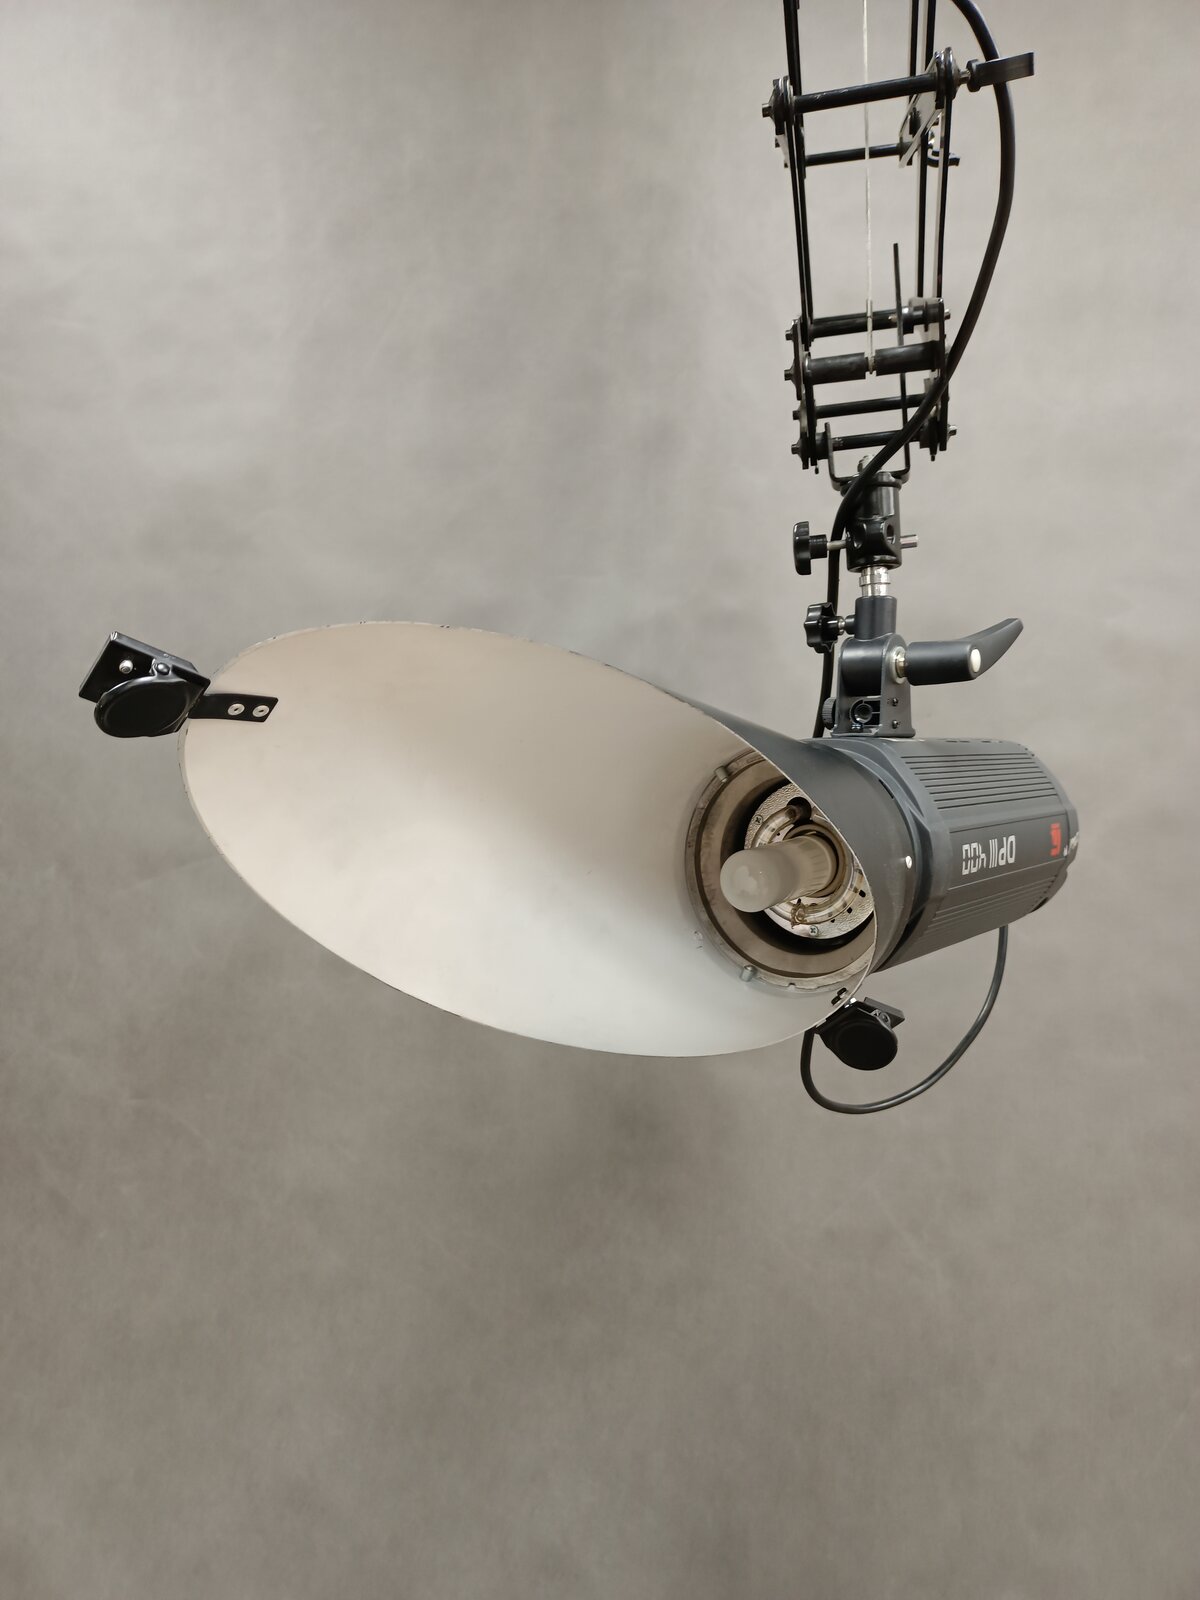 Zdjęcie przedstawia lampę studyjną z nałożoną czaszą, która jest podwieszona do wysięgnika, lampa z czaszą jest ułożona tak, że widać wnętrze czaszy i żarówkę.